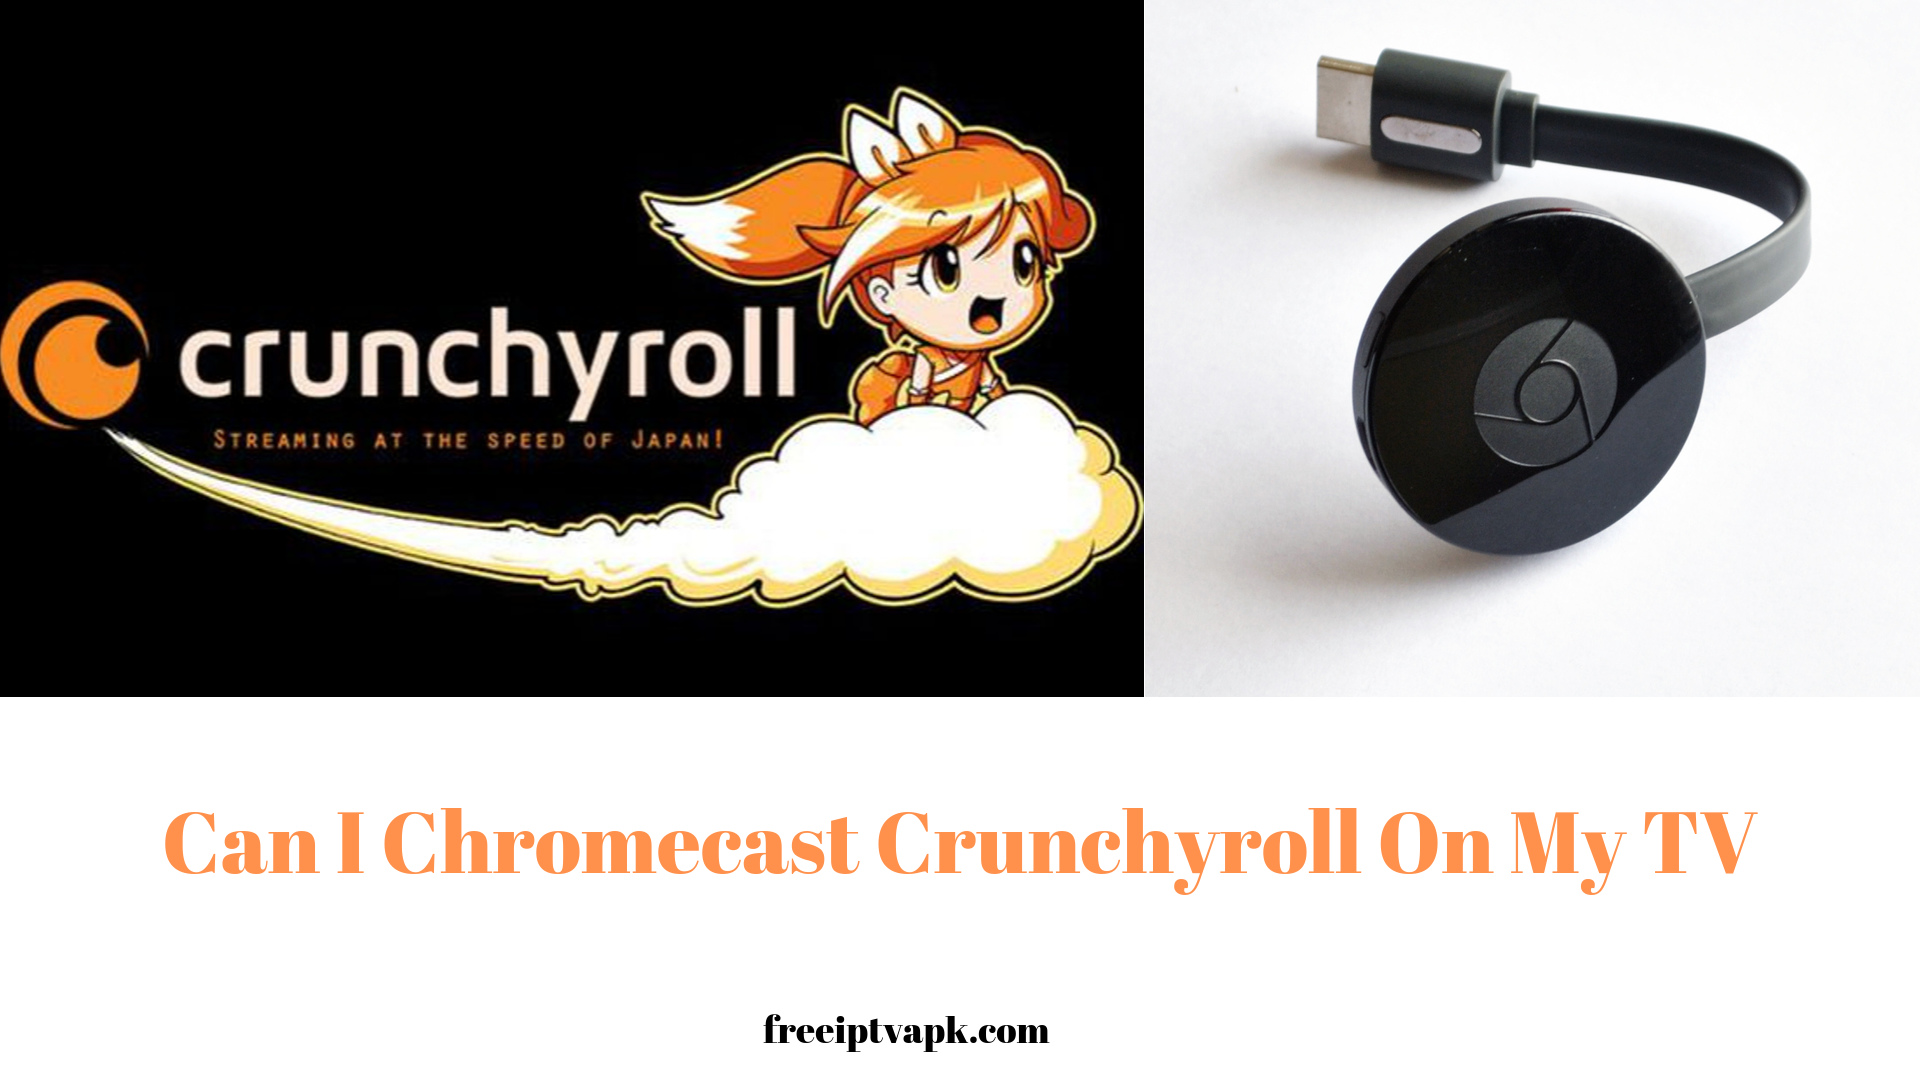 How to Chromecast Crunchyroll On My TV?